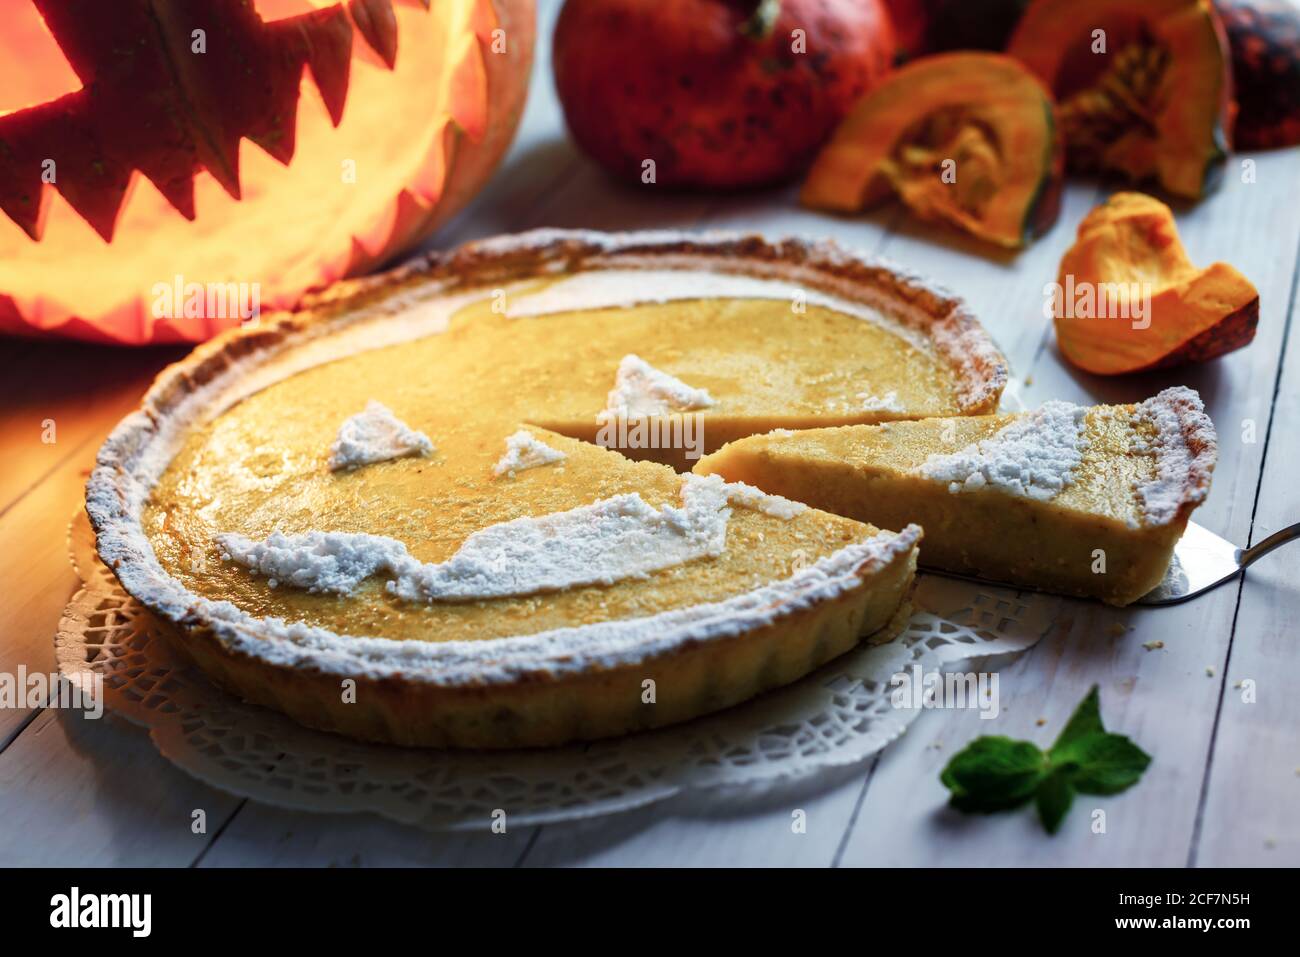 Deliziosa torta halloween di zucca fatta in casa con Jack-o-lanterna scolpita sullo sfondo. Torta d'arancia con menta e zucchero in polvere. Fotografia alimentare Foto Stock